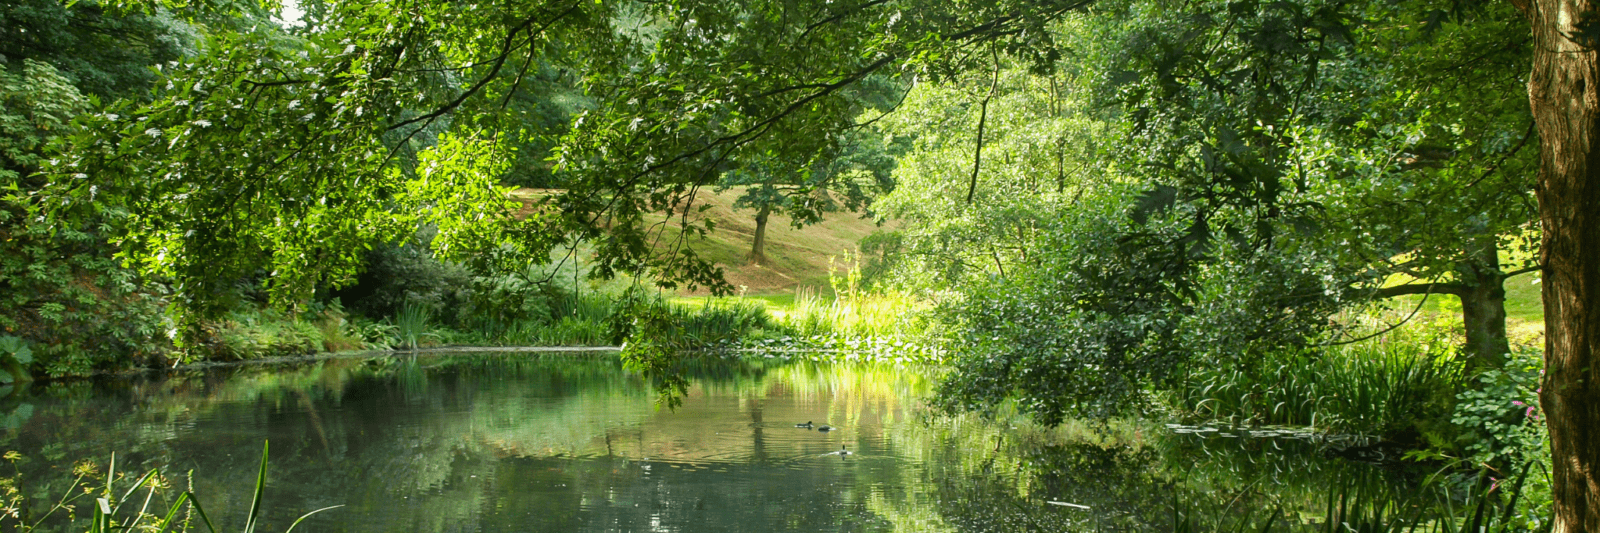 Rural pond